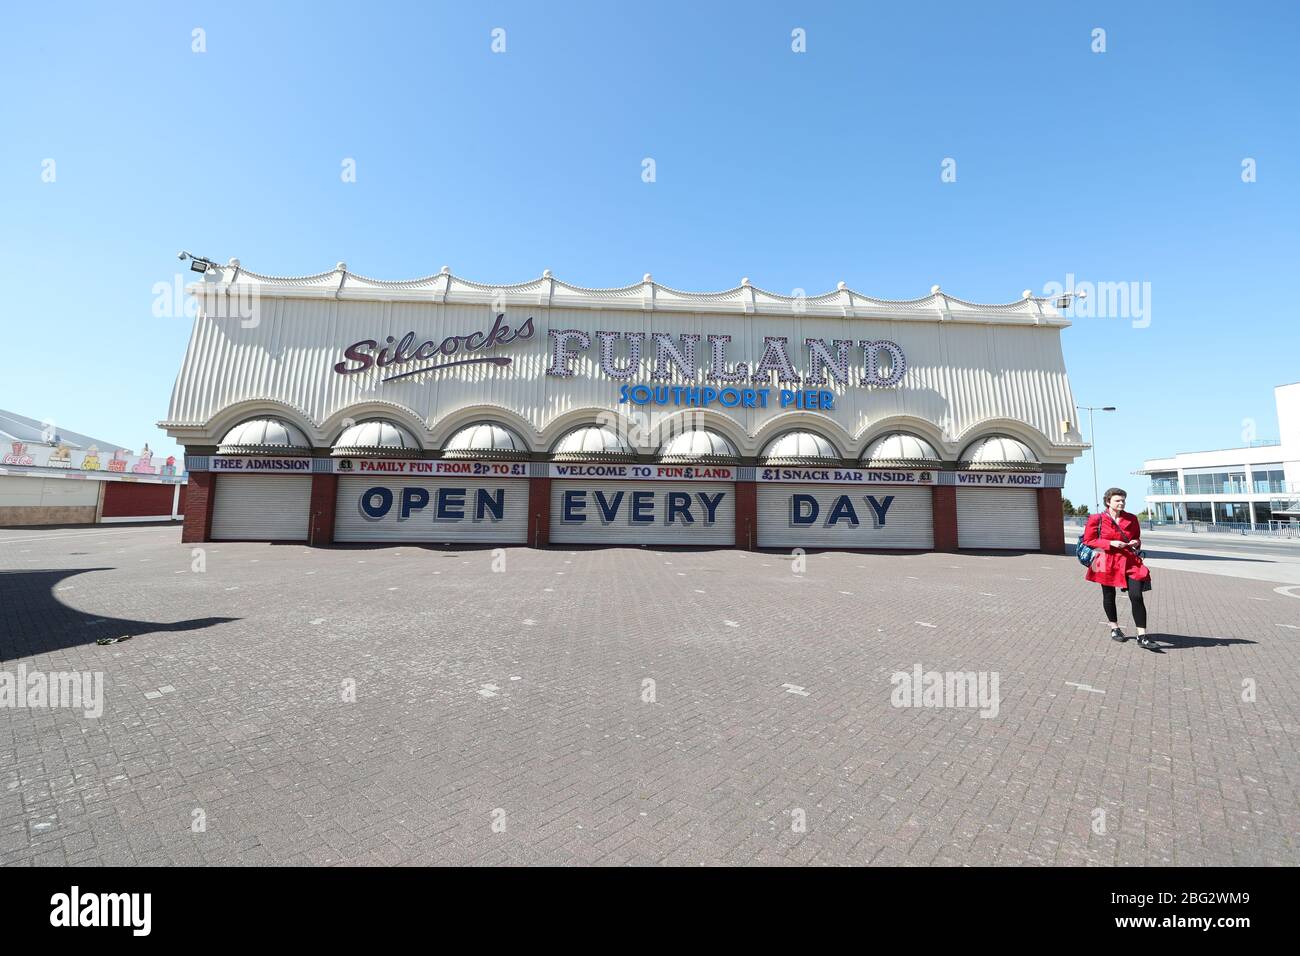 Le persiane chiuse che recita "Open Every Day" a Silcocks Funland and Pier, Southport, mentre il Regno Unito continua a chiudere a chiave per contribuire a frenare la diffusione del coronavirus. Foto Stock